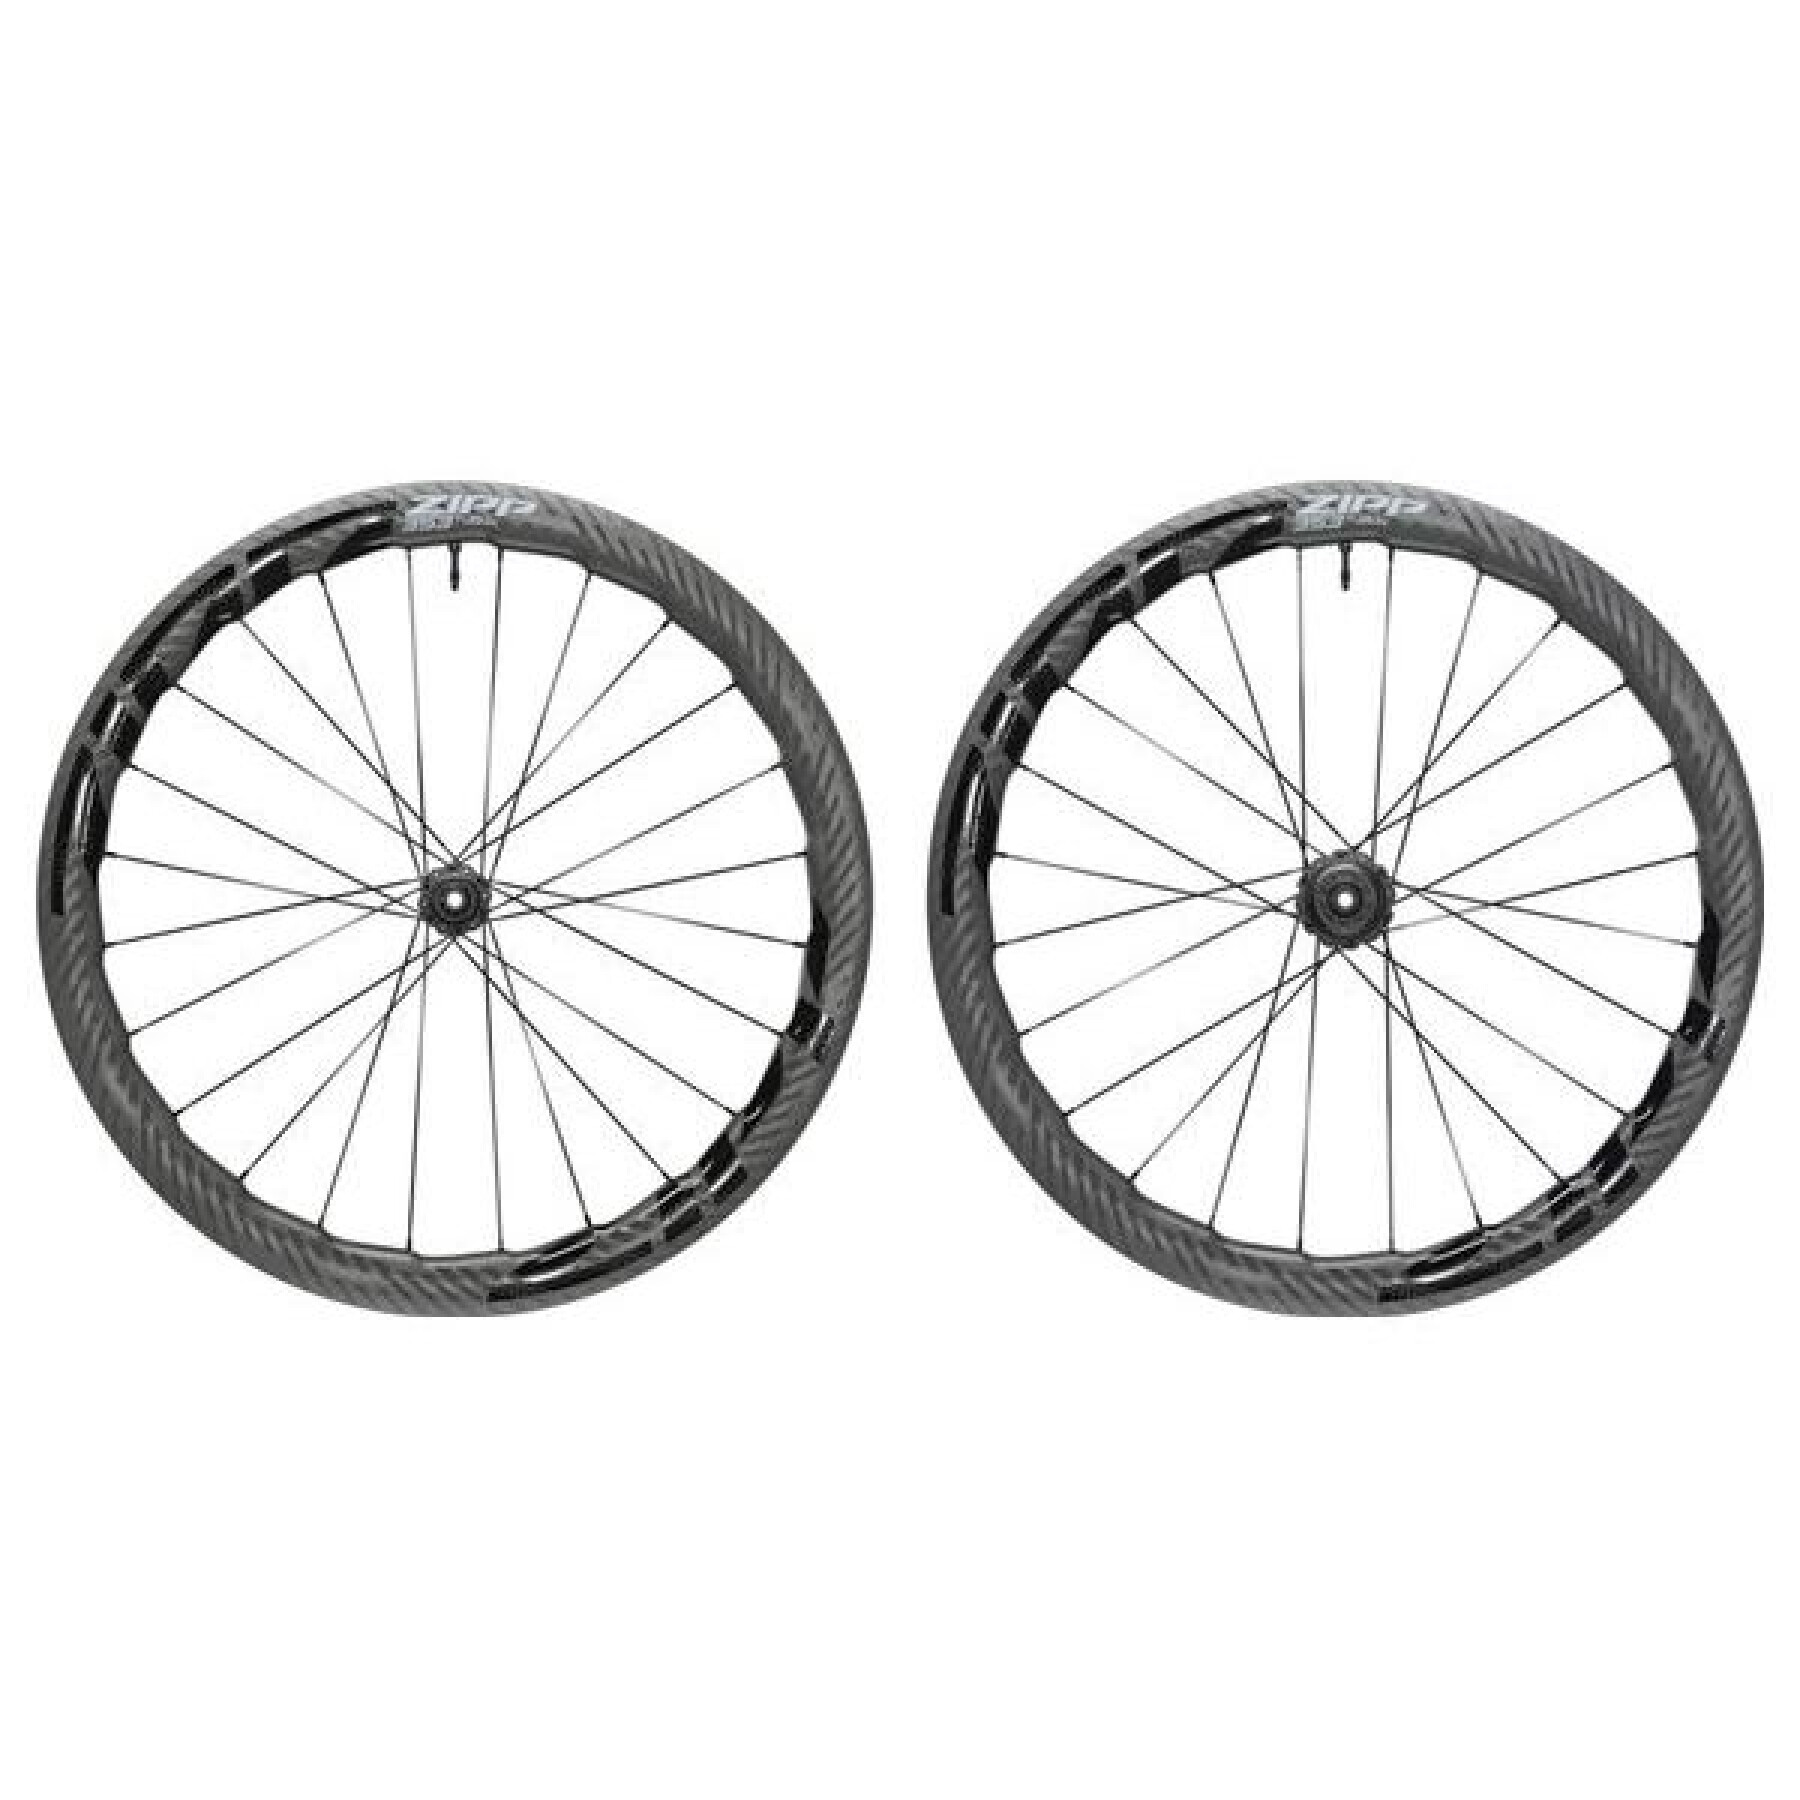 Paire de roues de vélo tubeless disque Zipp 353 NSW CL HG